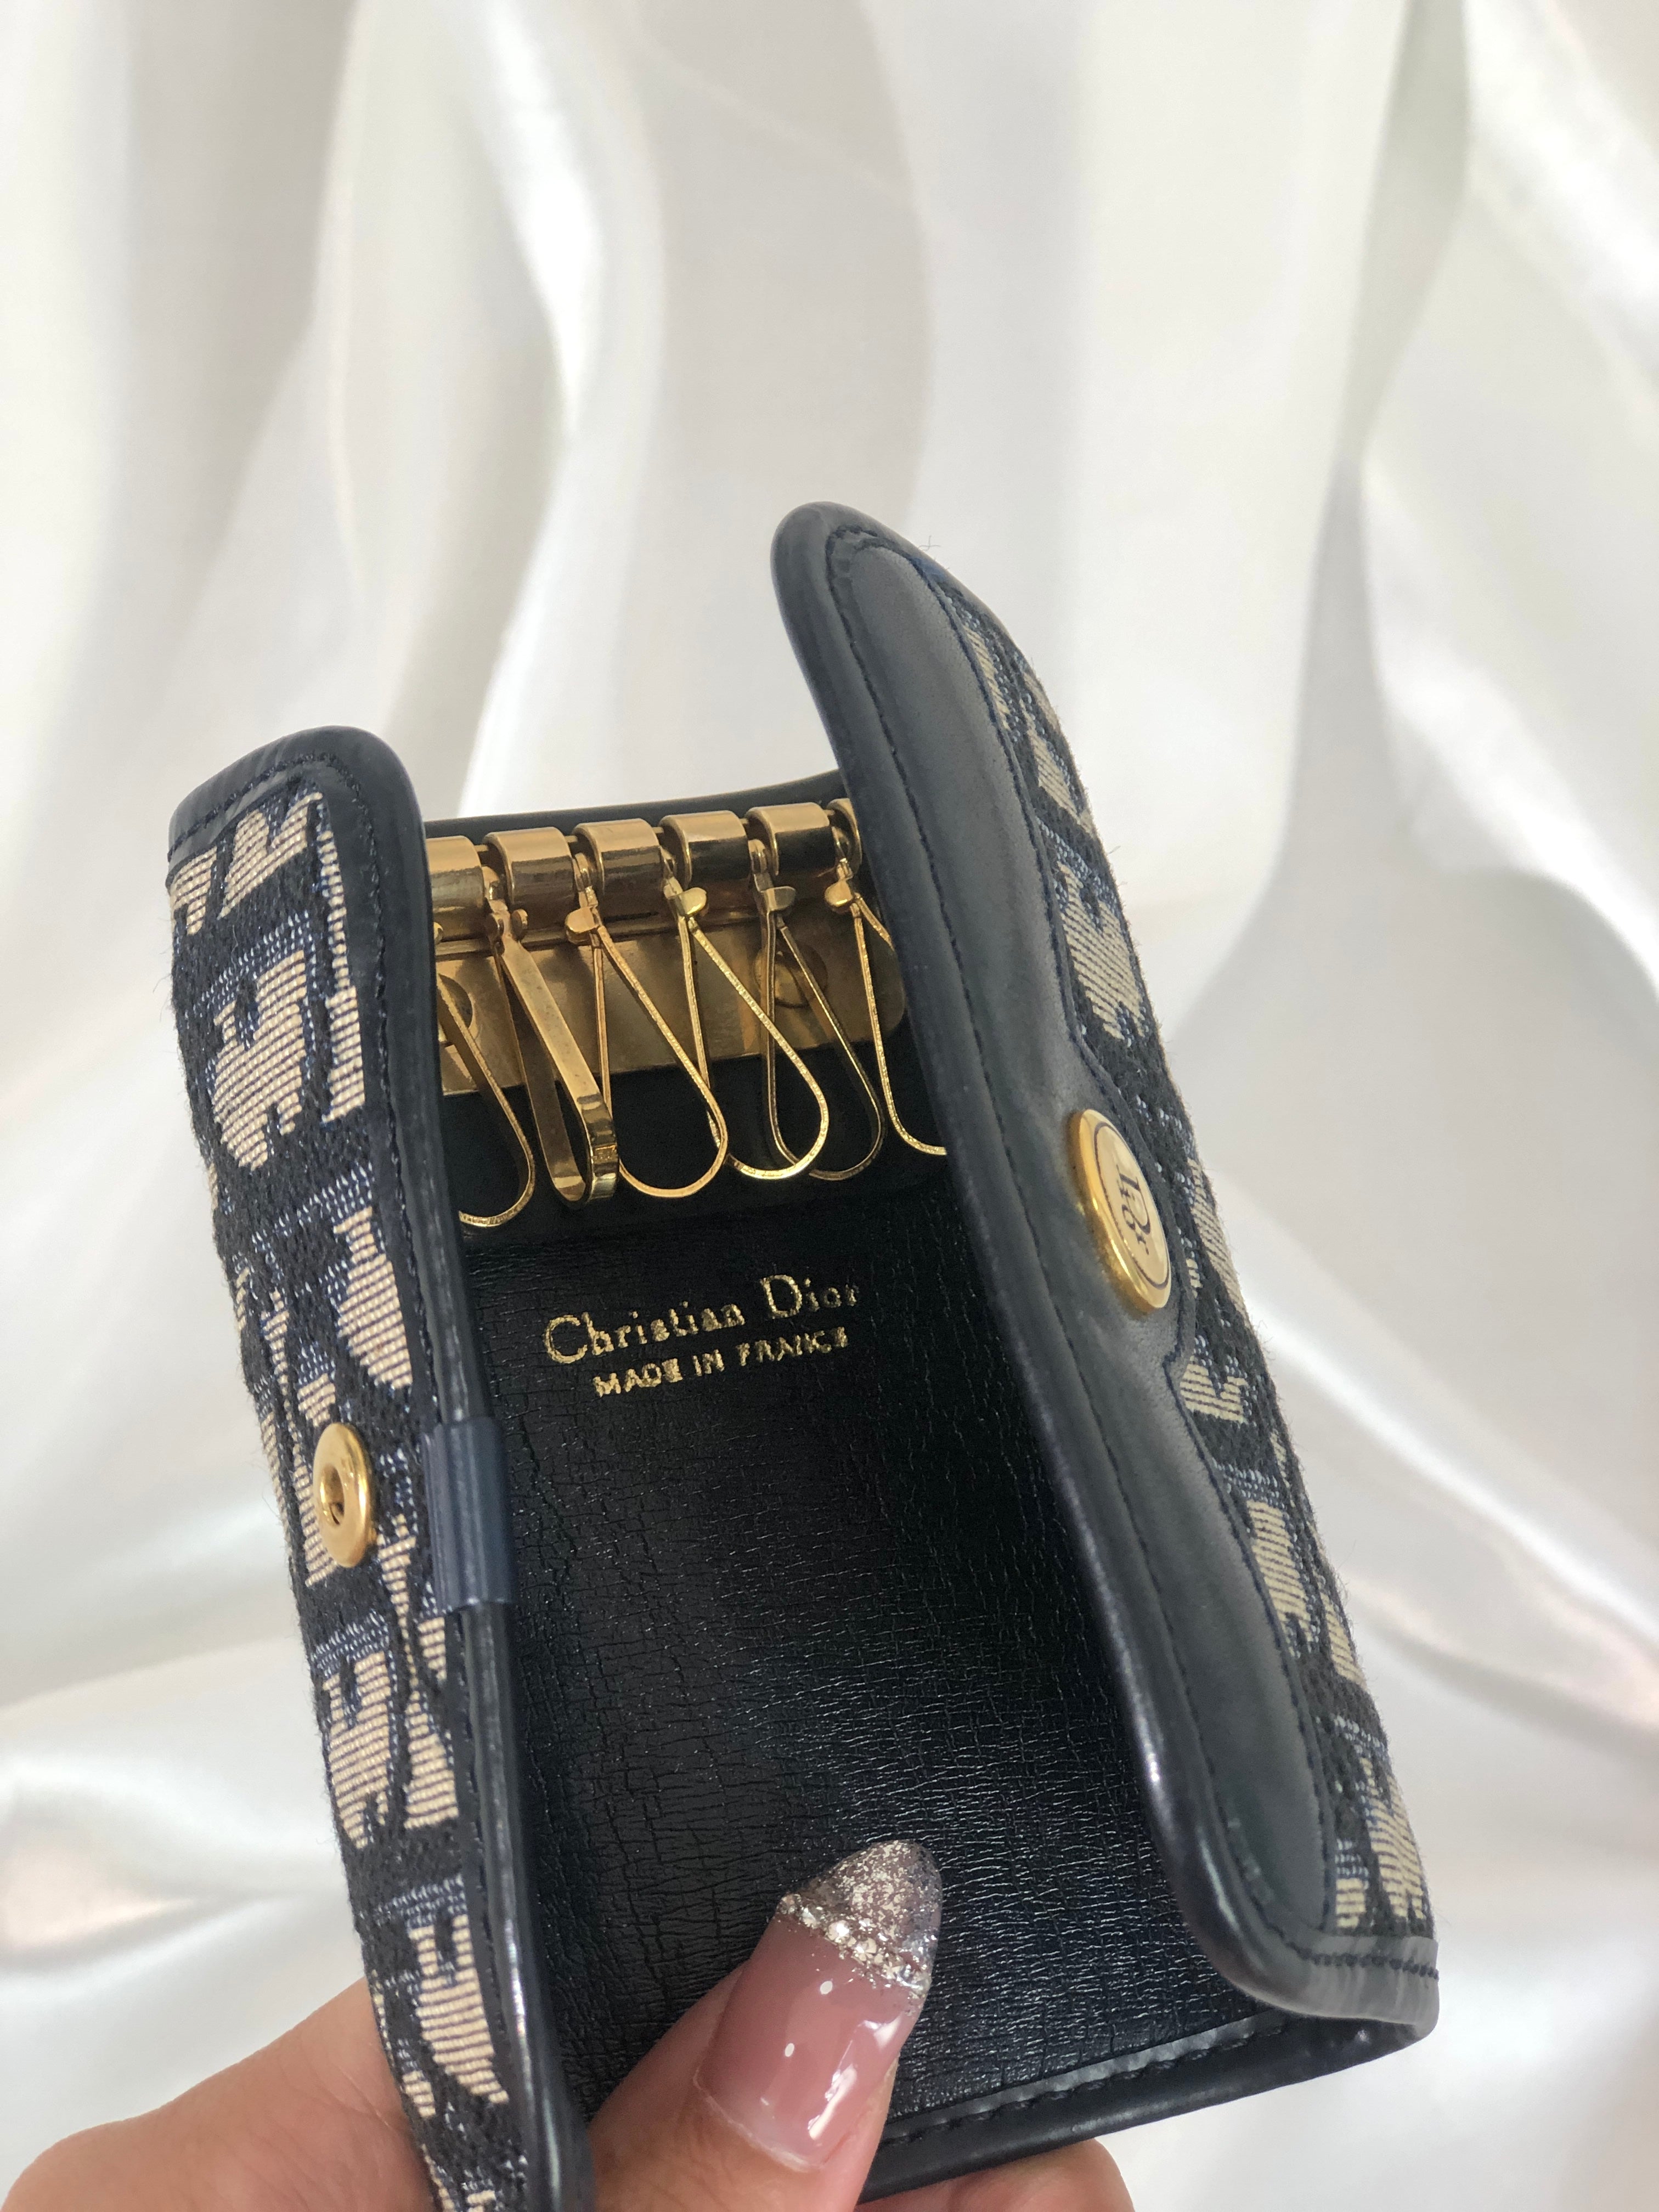 Christian Dior Trotter Jacquard Leather Key Case Navy Vintage i8hs8t